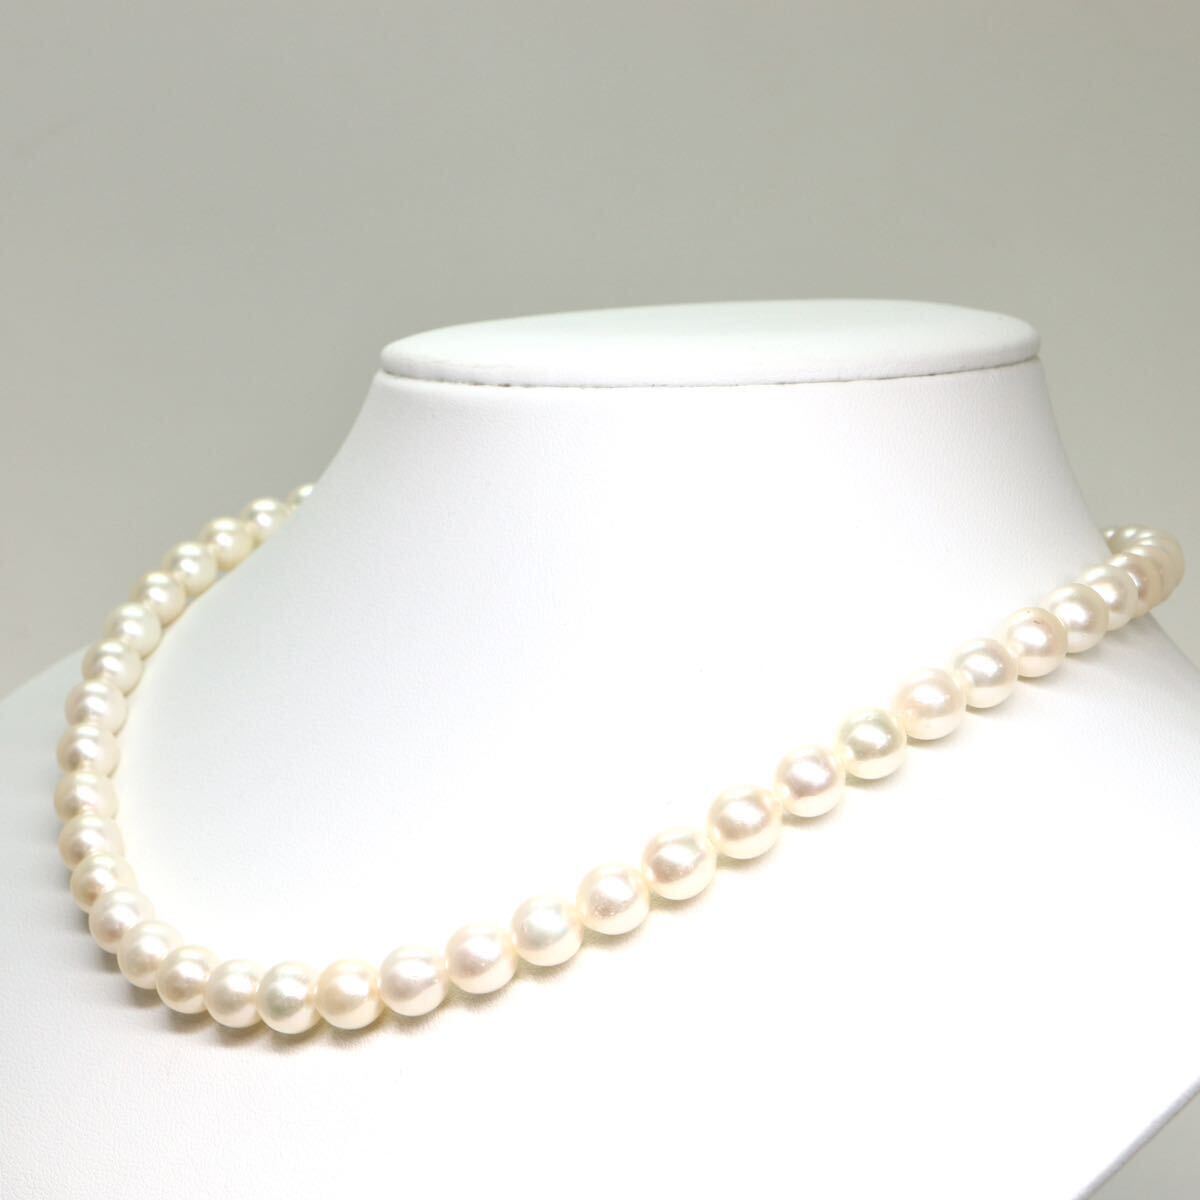 《アコヤ本真珠ネックレス》A 約7.5-8.0mm珠 37.6g 約42cm pearl necklace ジュエリー jewelry DC0/DC0の画像3